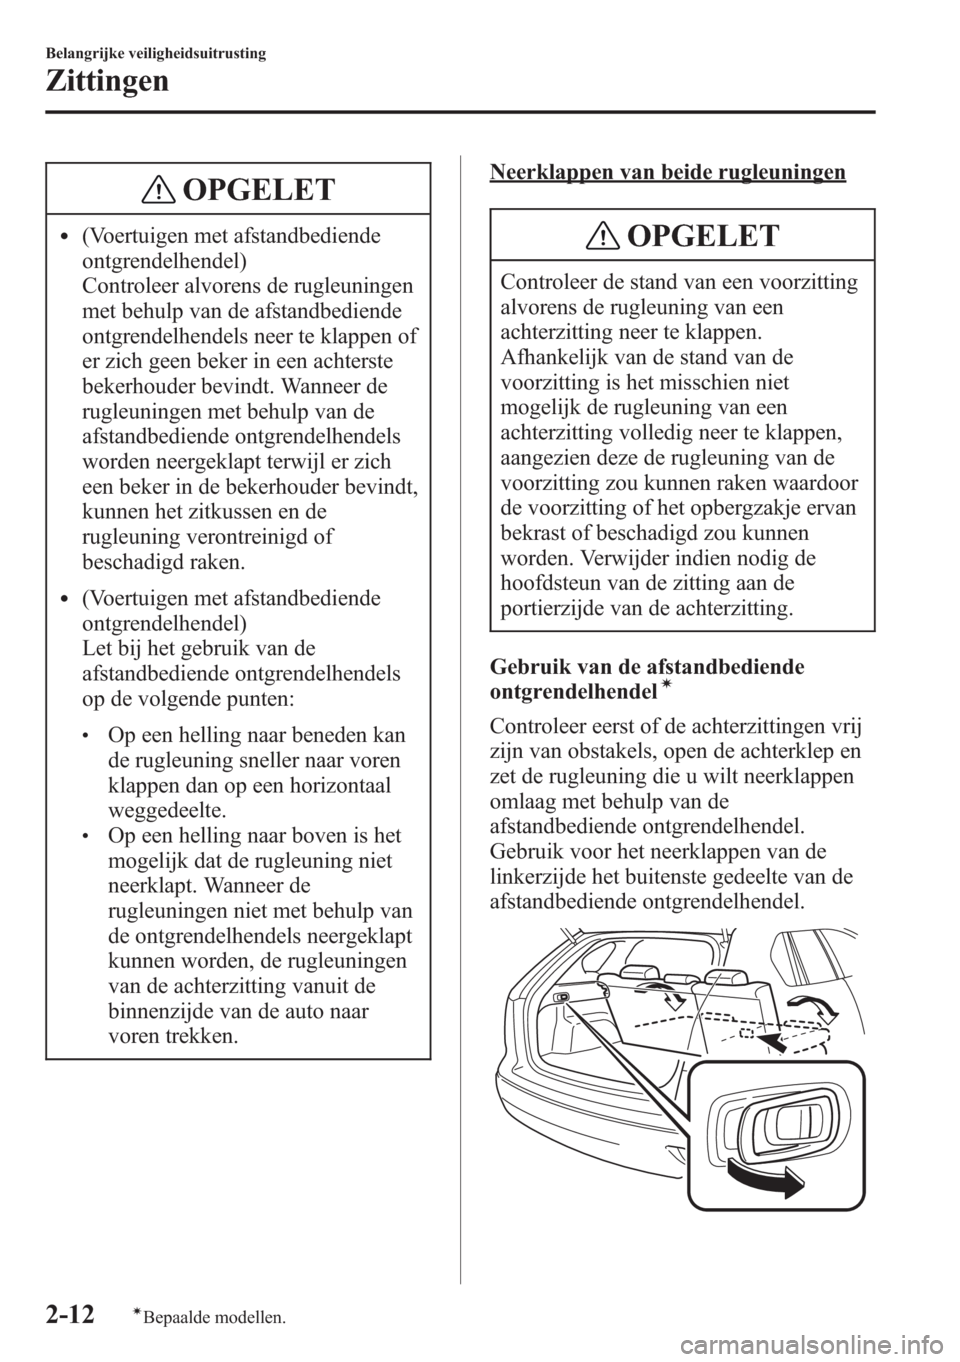 MAZDA MODEL CX-5 2013  Handleiding (in Dutch) OPGELET
l(Voertuigen met afstandbediende
ontgrendelhendel)
Controleer alvorens de rugleuningen
met behulp van de afstandbediende
ontgrendelhendels neer te klappen of
er zich geen beker in een achterst